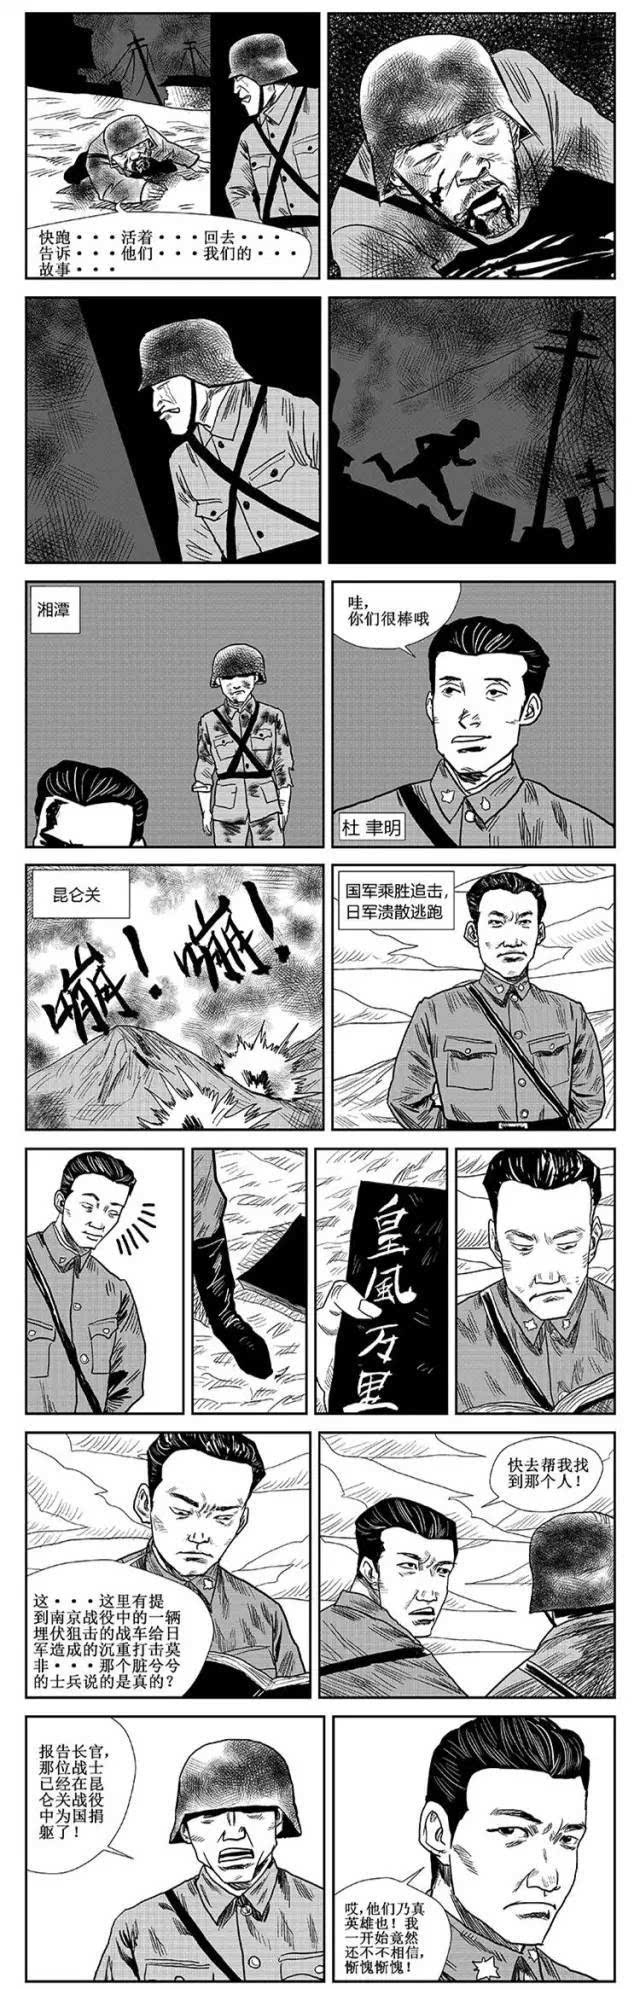 南京沦陷,国军士兵在被围战车中这样狙击日寇